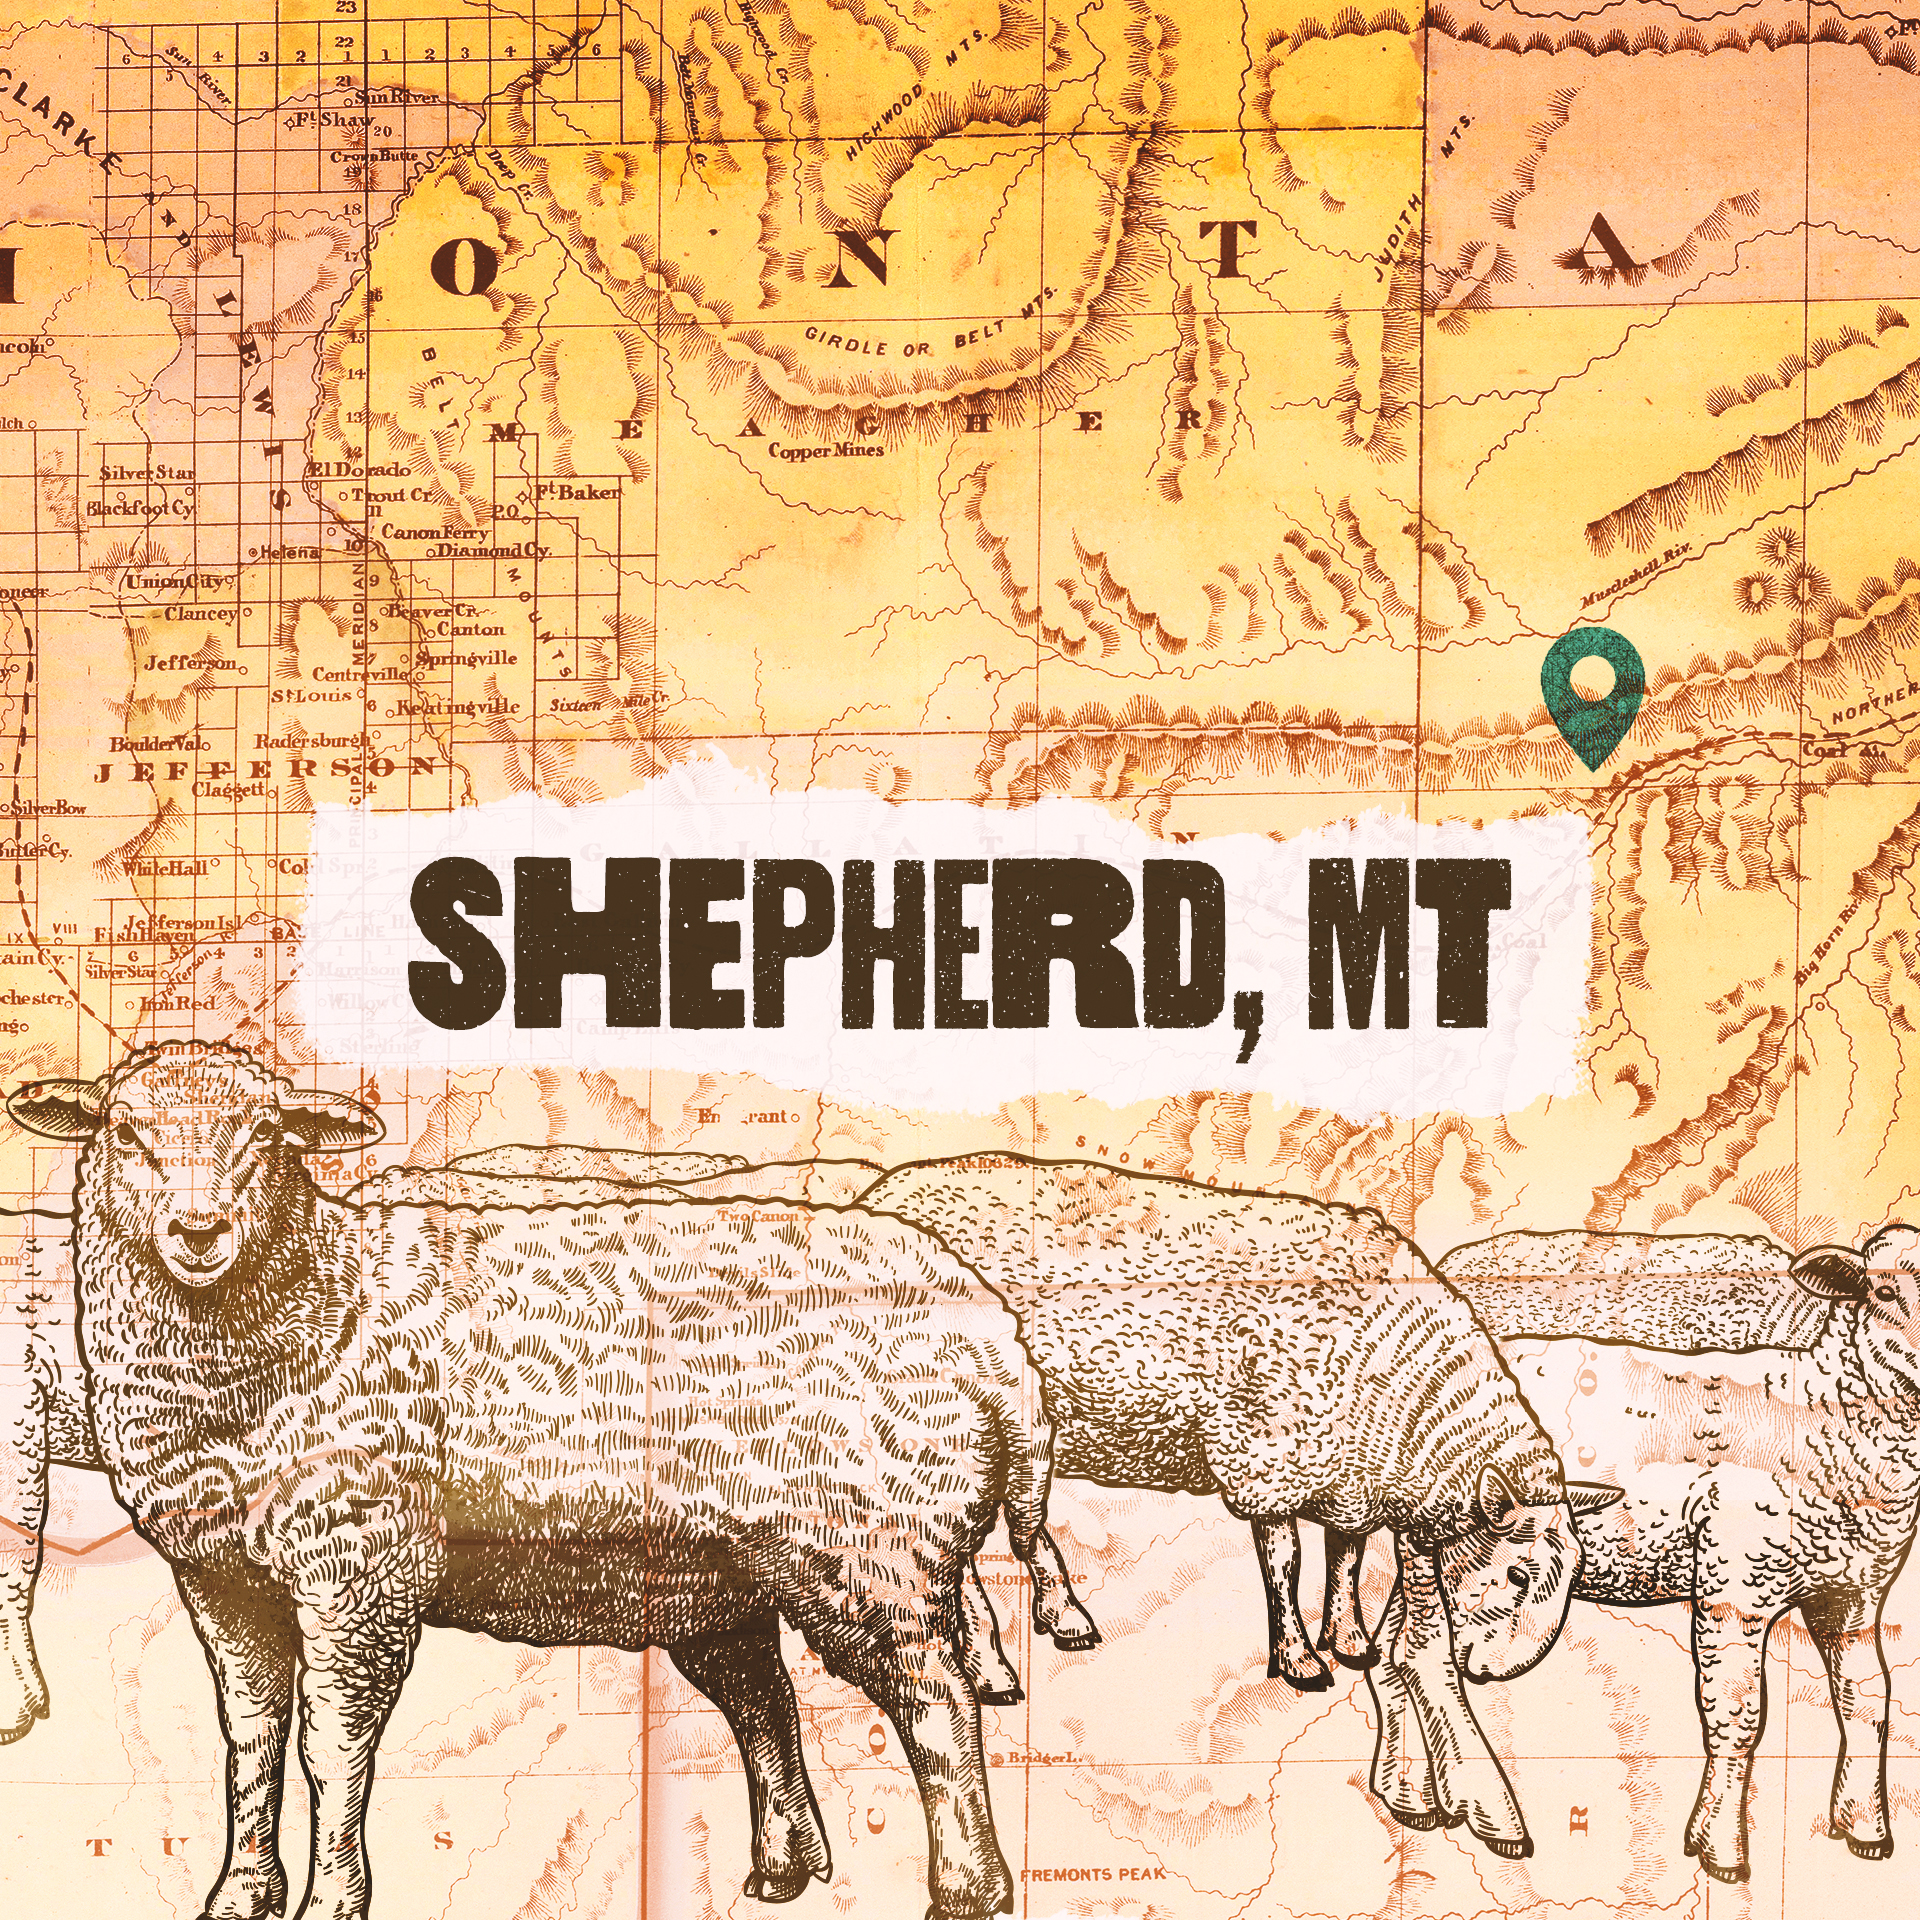 Shepherd, MT #3: Living Life to the Full